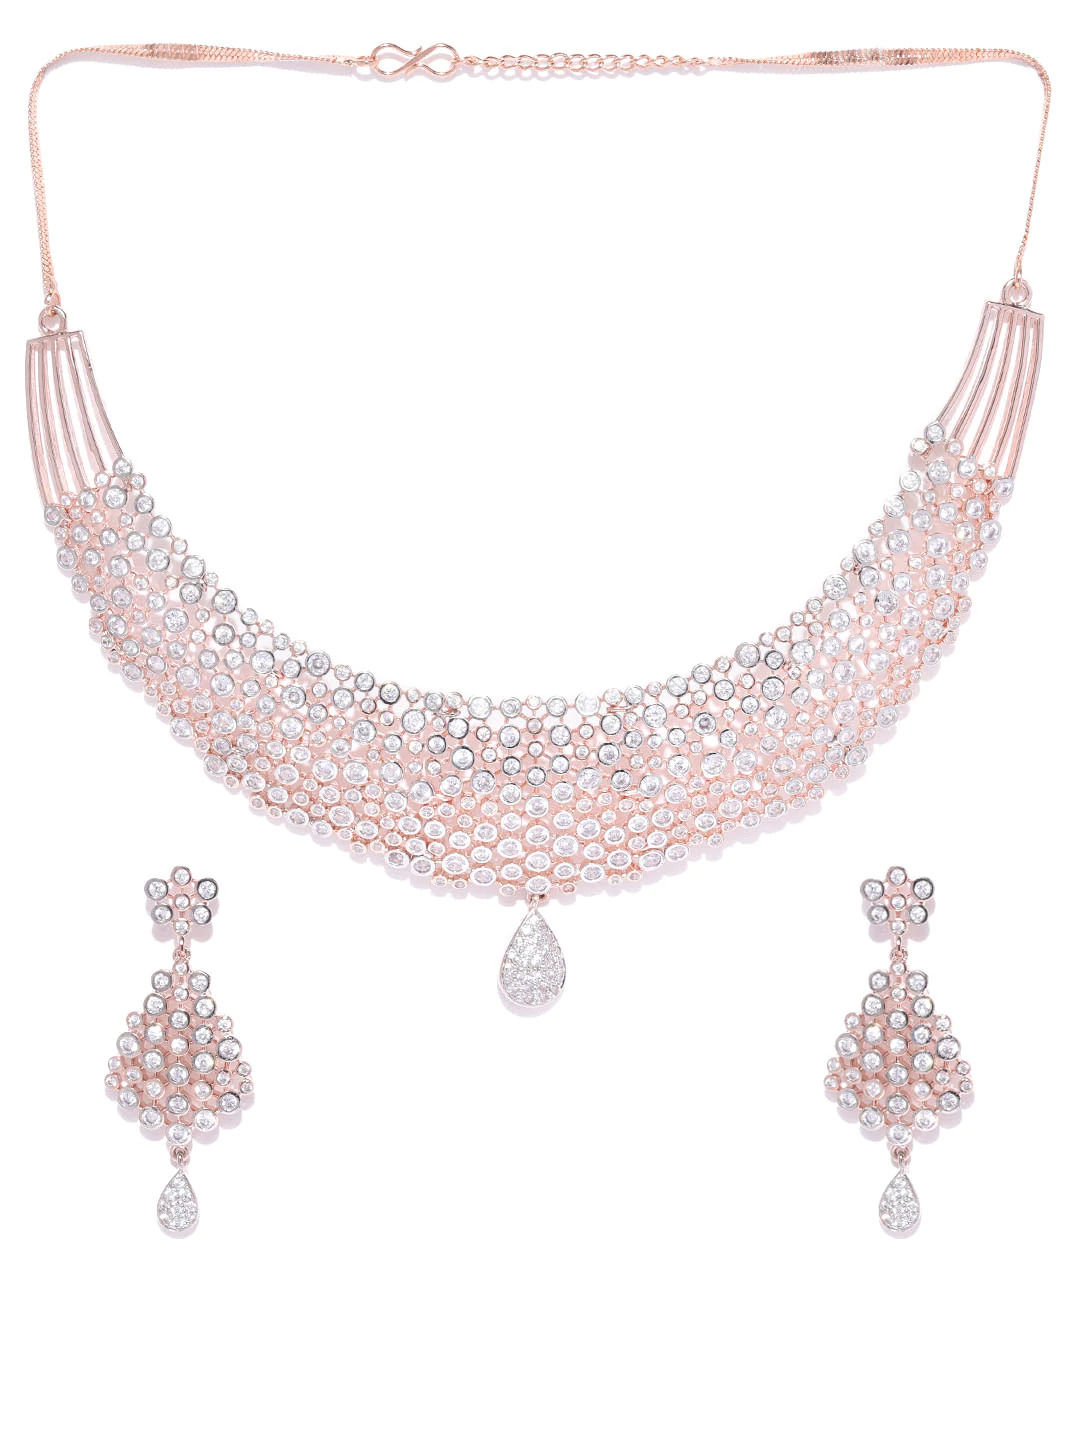 Kiarika Statement Necklace - Shop Statement Jewelry Online- Edgability –  EDGABILITY